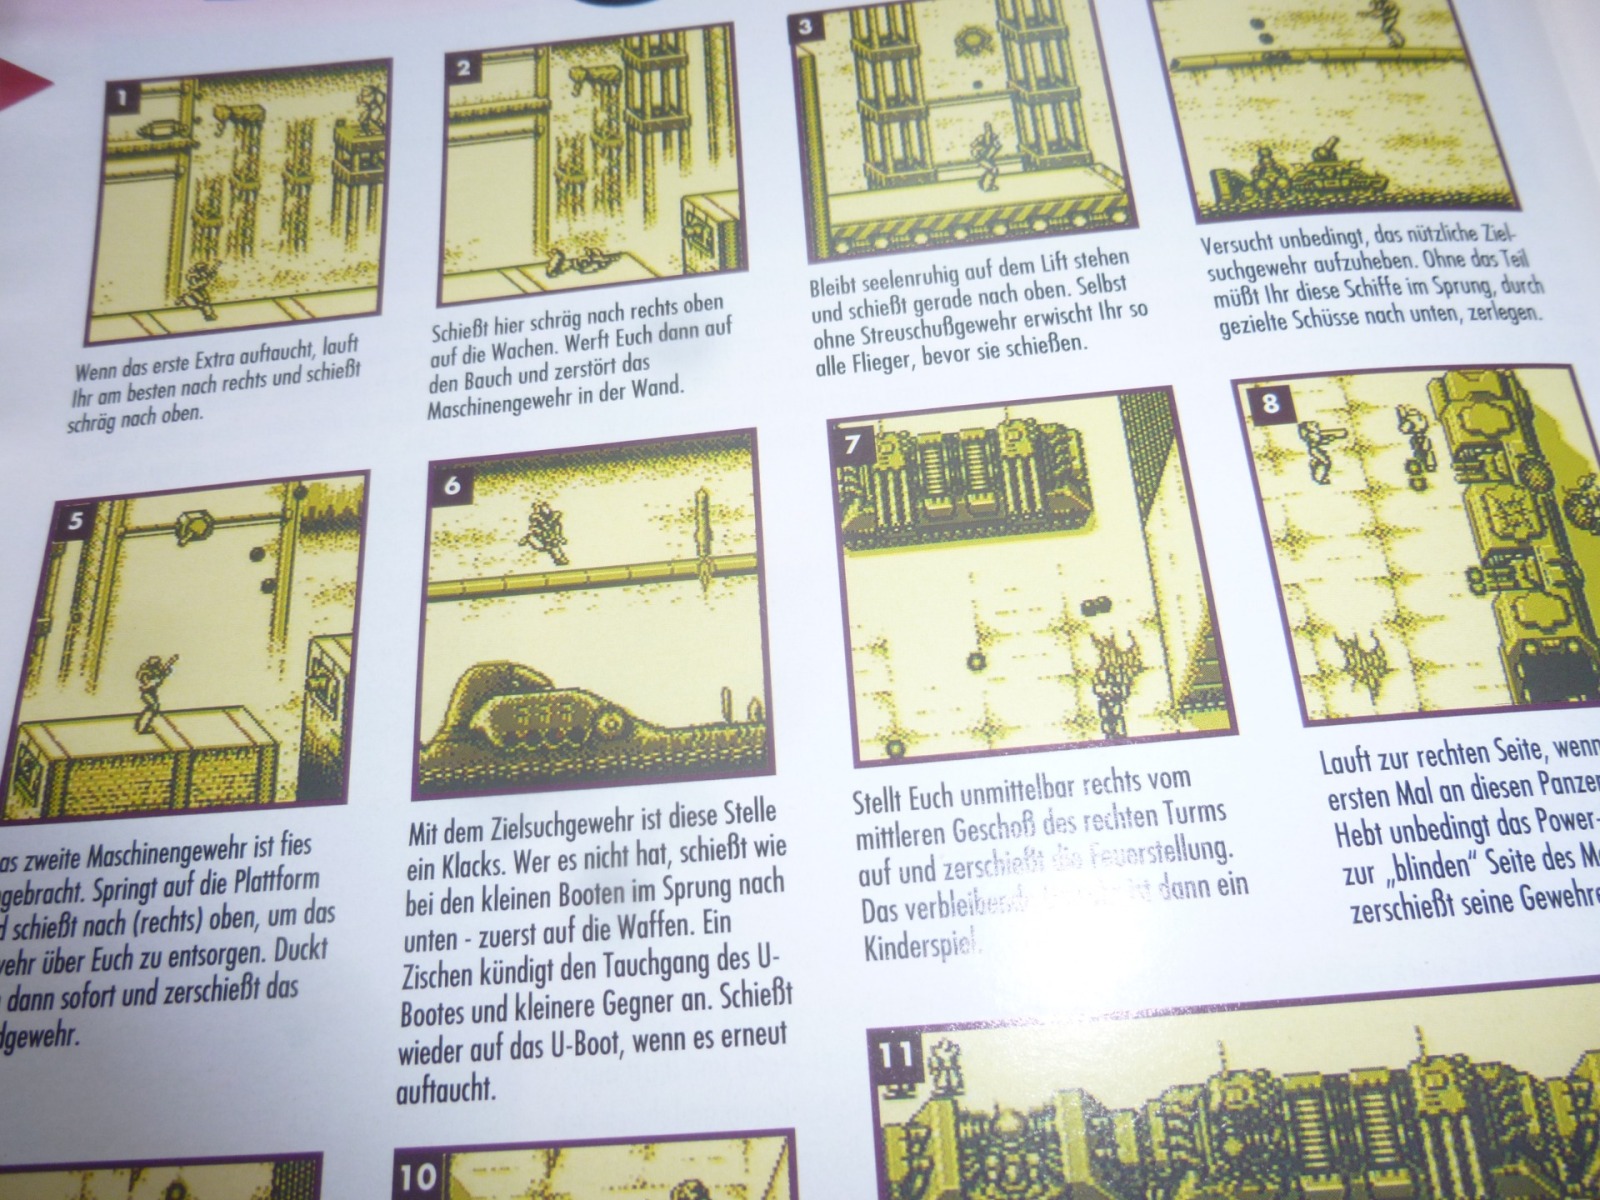 TOTAL Das unabhängige Magazin - 100 Nintendo - Ausgabe 7/93 1993 31